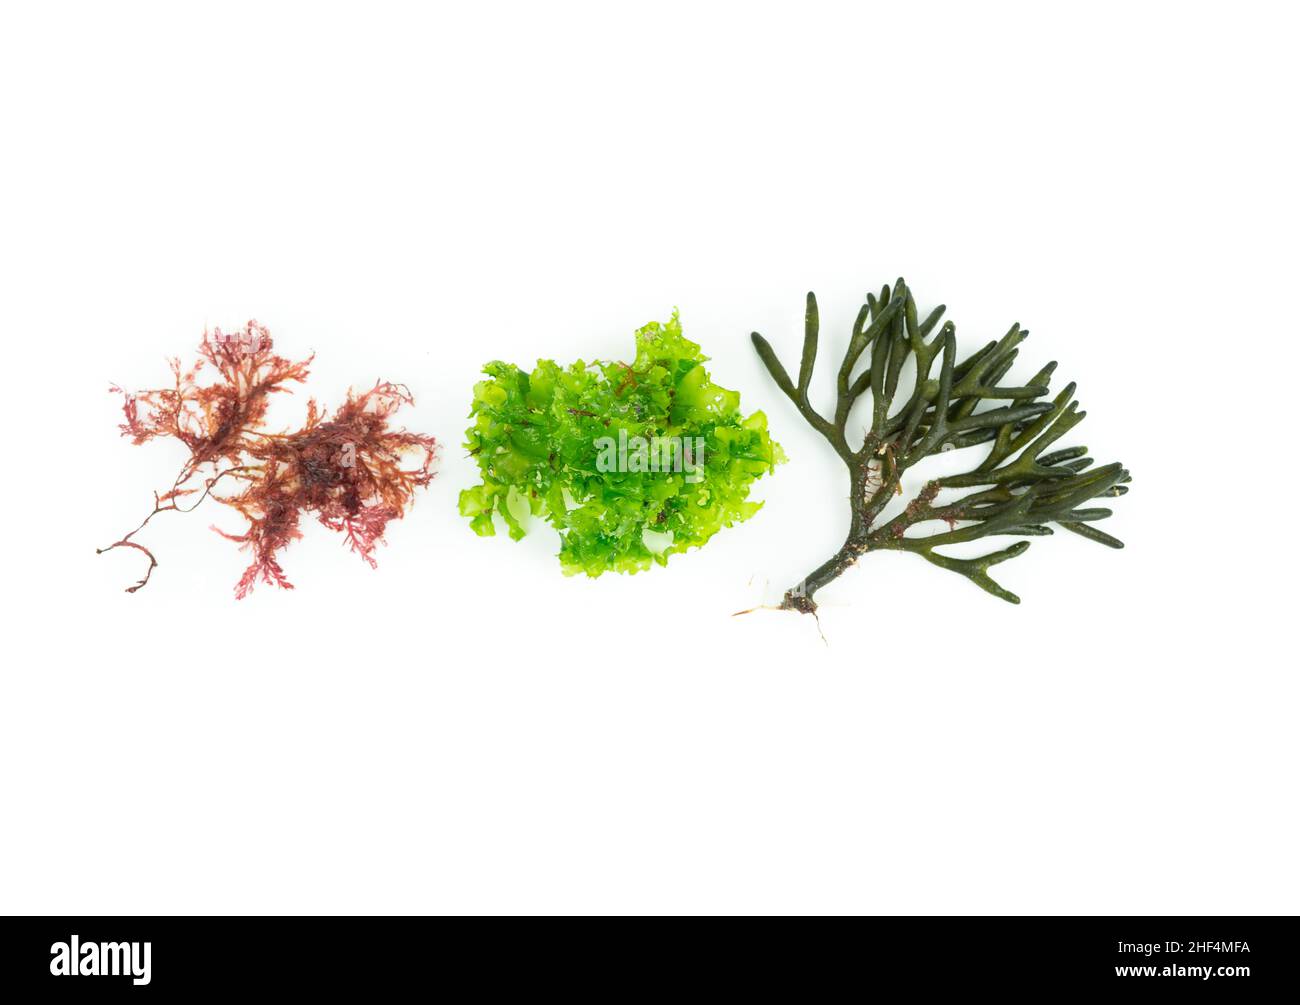 Tres especies diferentes de algas sobre fondo blanco. Codium tomentoso, Gelidium, Ulva lactuca. Vista superior. Foto de stock